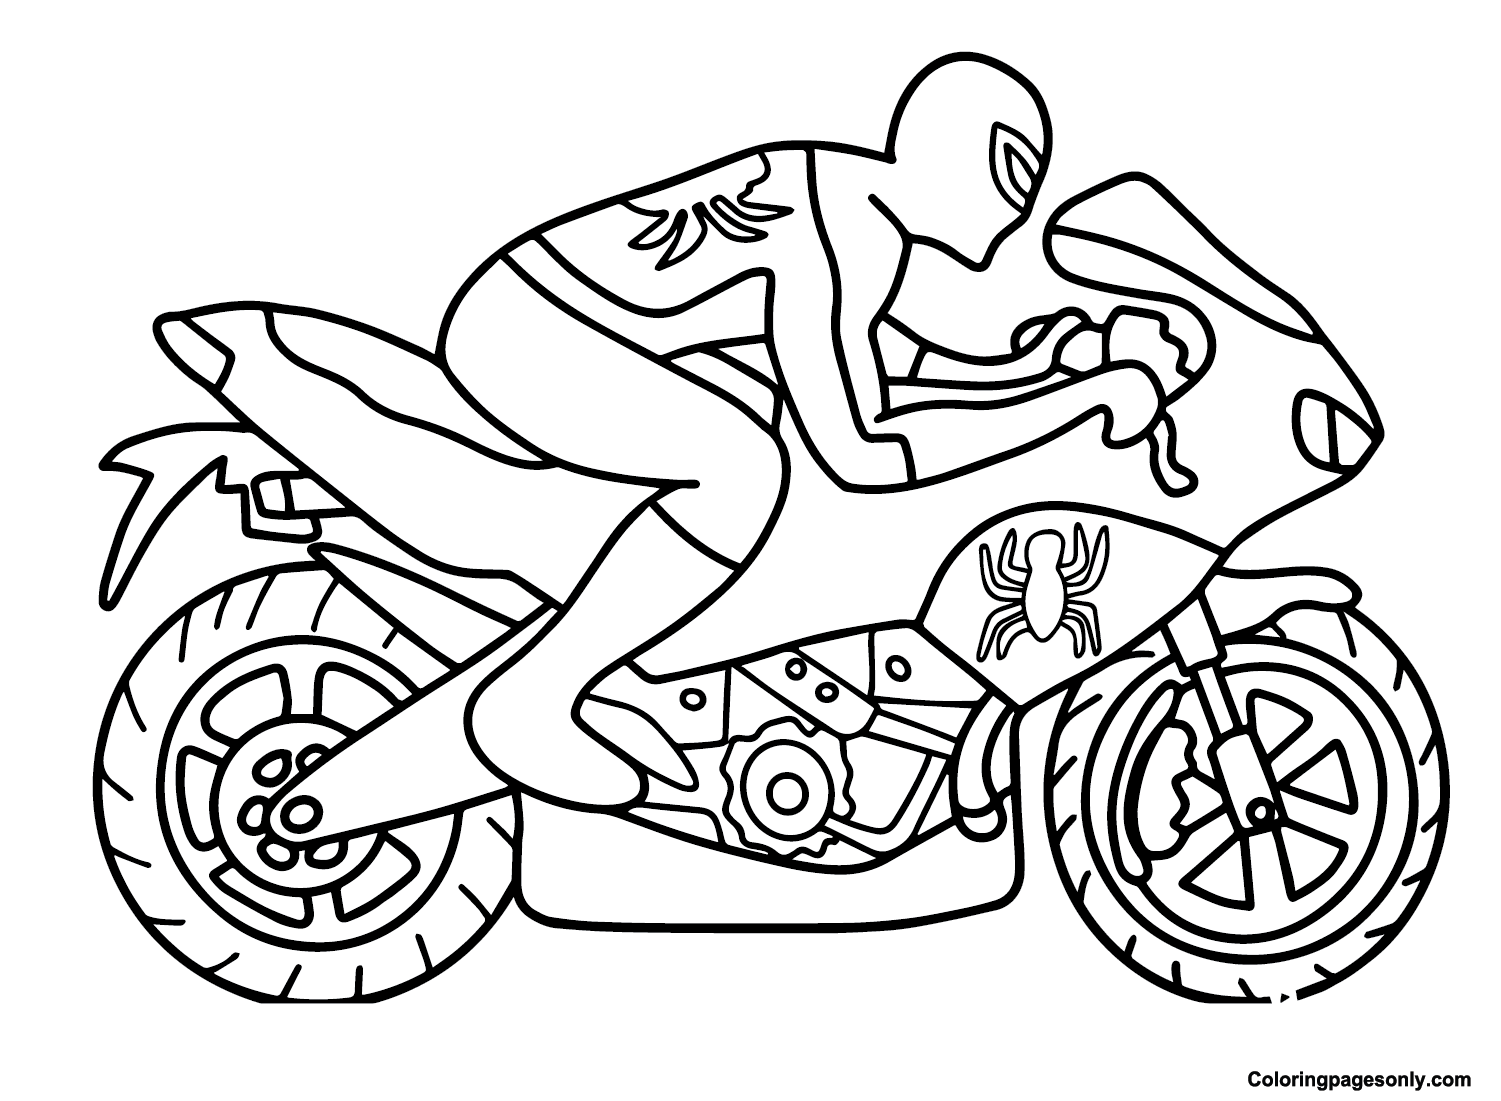 Мотоцикл-паук из Spidey